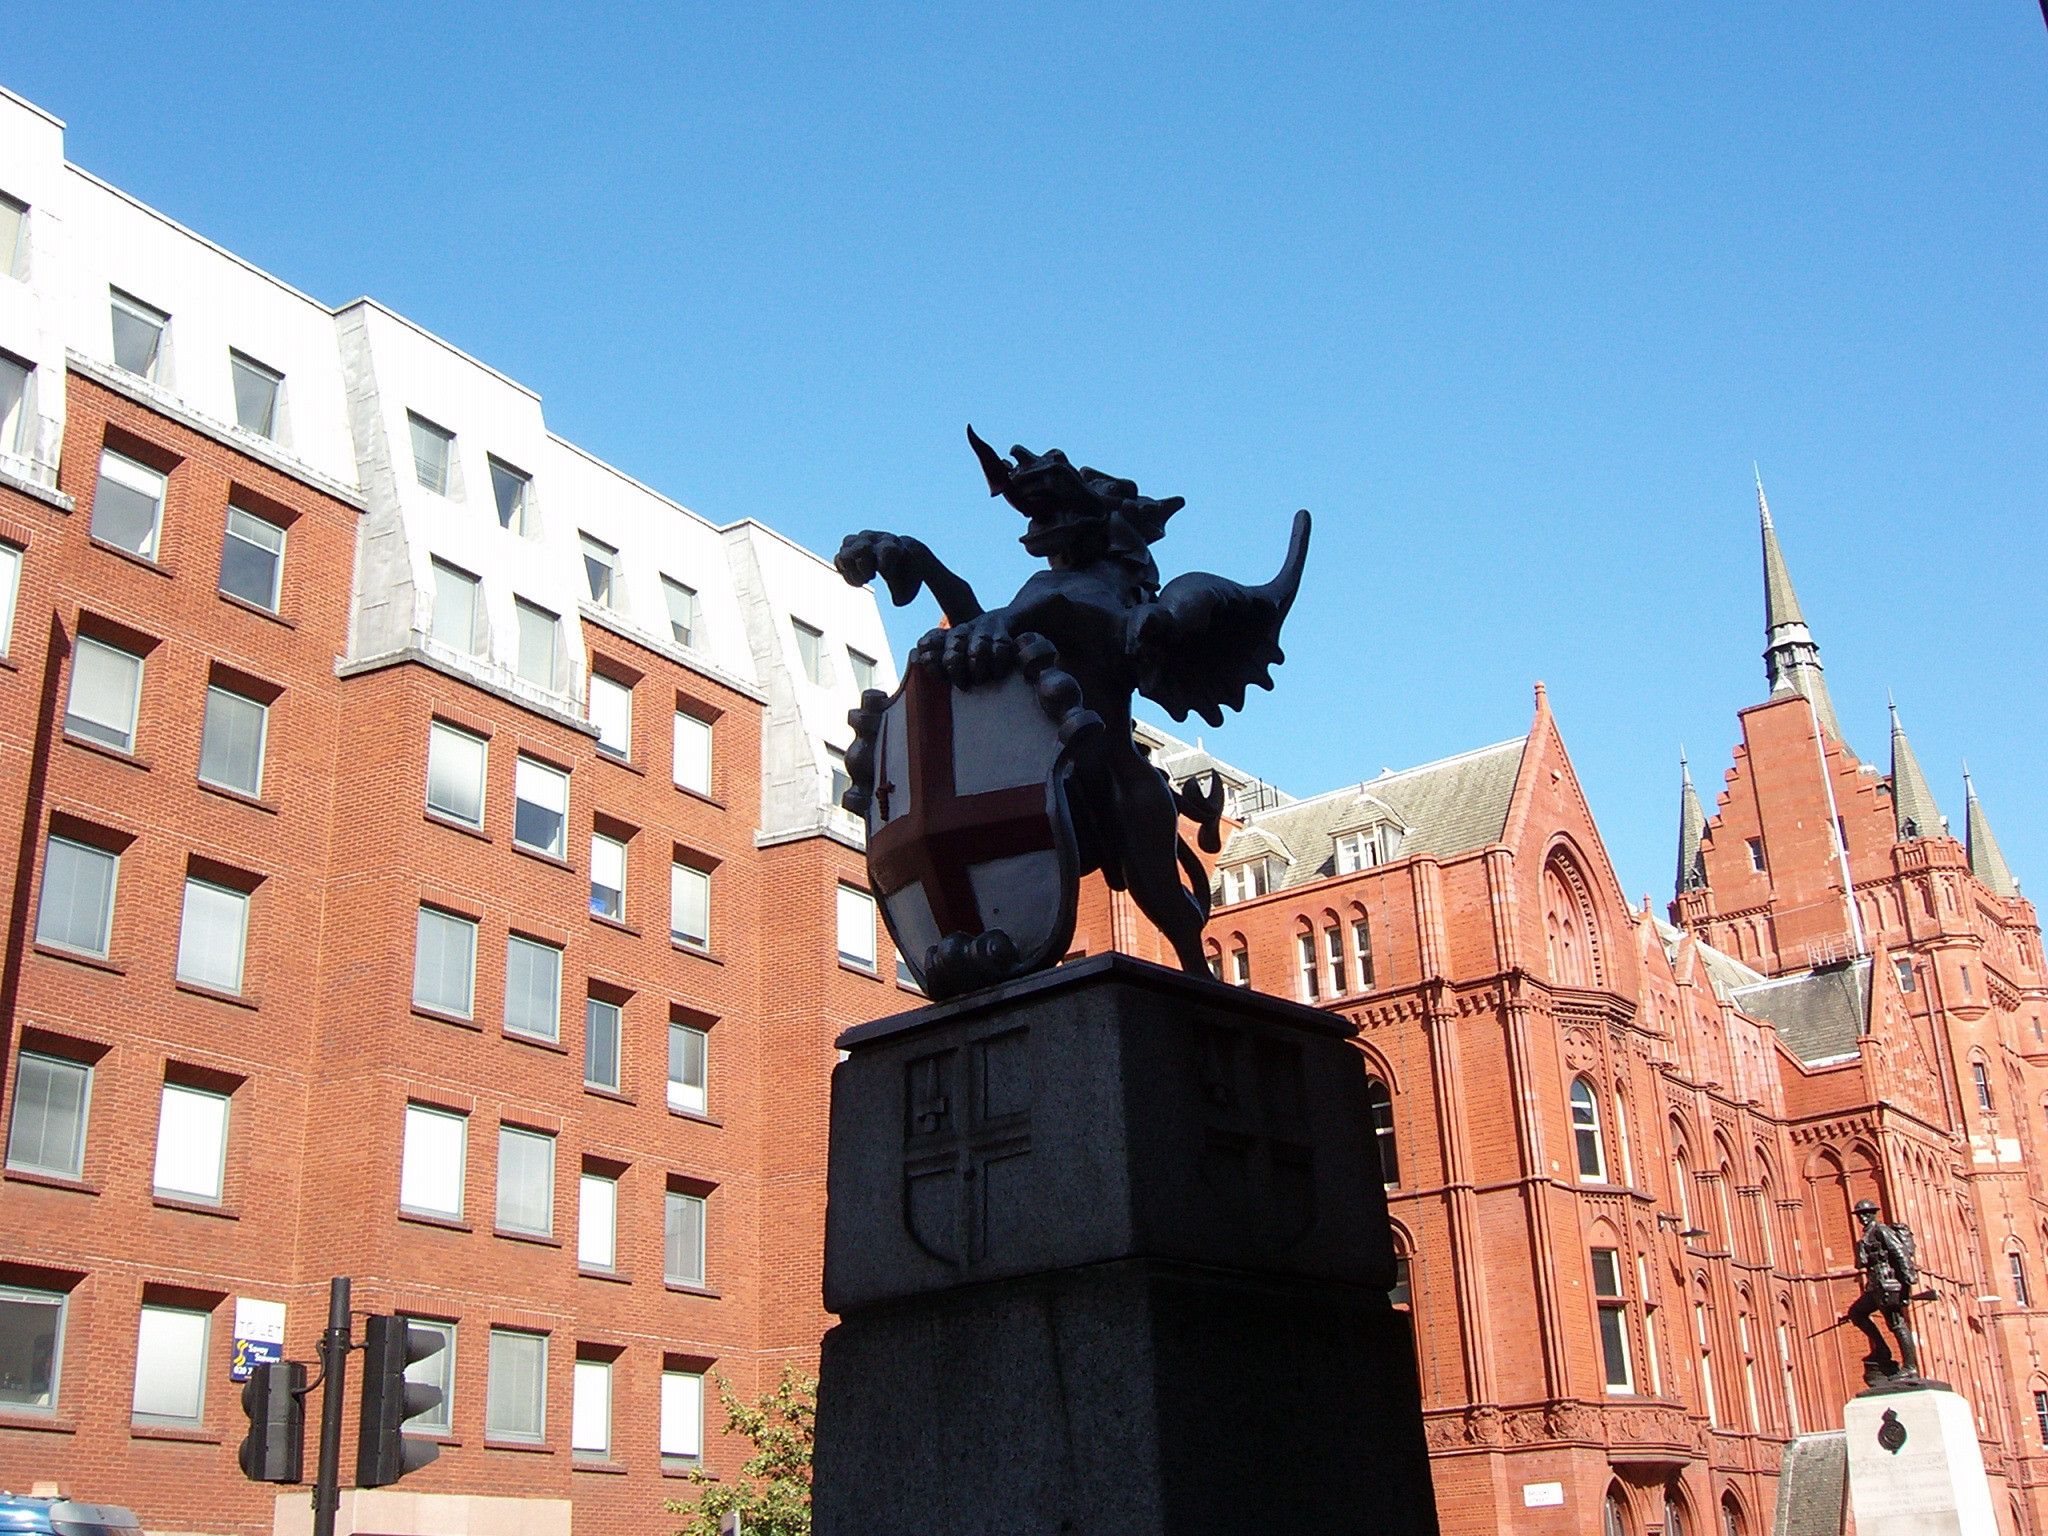 Драконы, охраняющие границы Сити, Лондон (Dragon boundary mark)